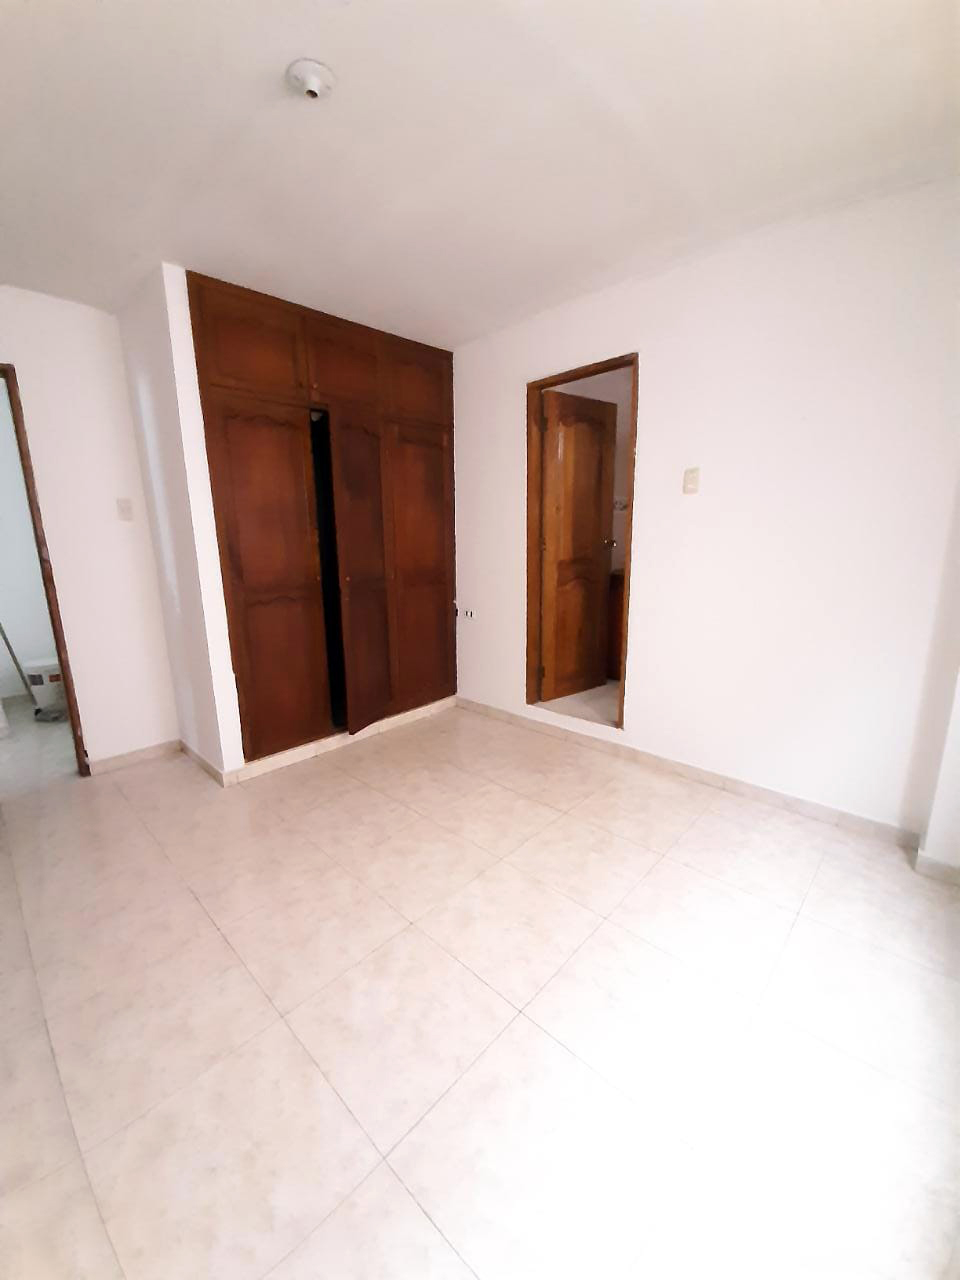 Apartamento en Arriendo por Inmobiliaria Inurbanas S.A.S ubicado en Barranquilla. El código del inmueble es: 7367388 Imágen 9